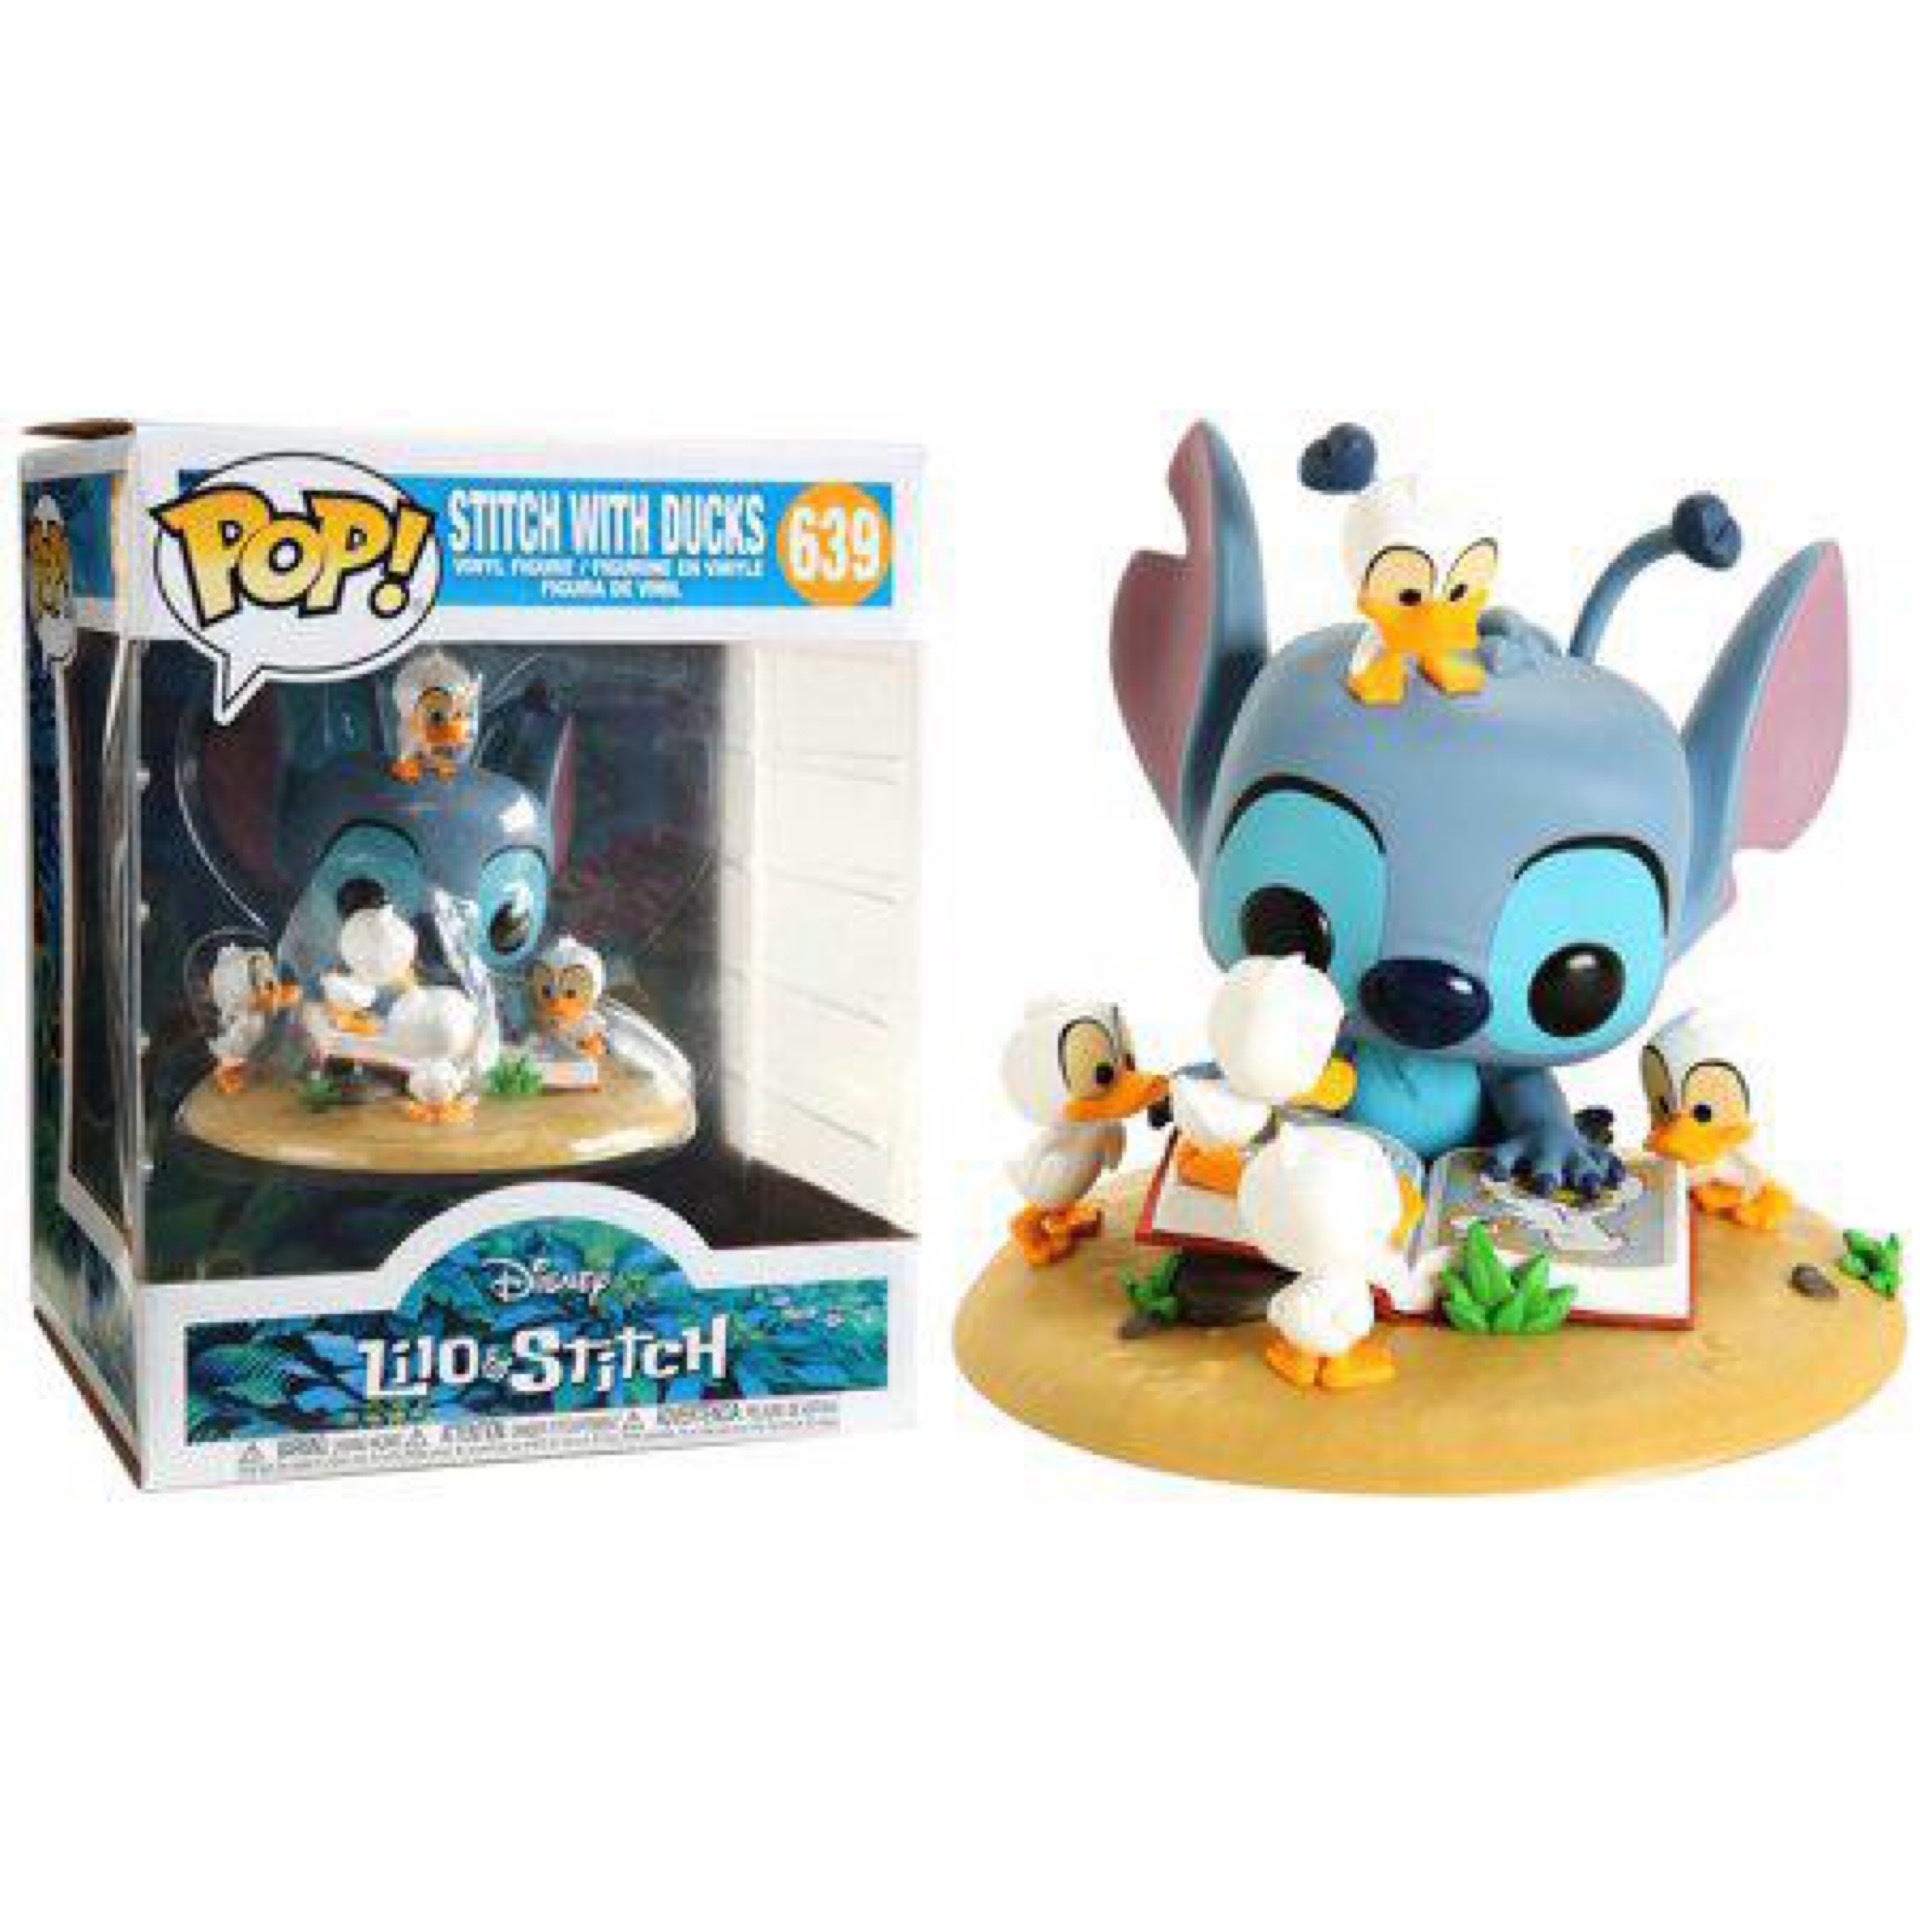 Funko Pop! Disney: Lilo & Stitch #639 Stitch With Ducks Vinyl